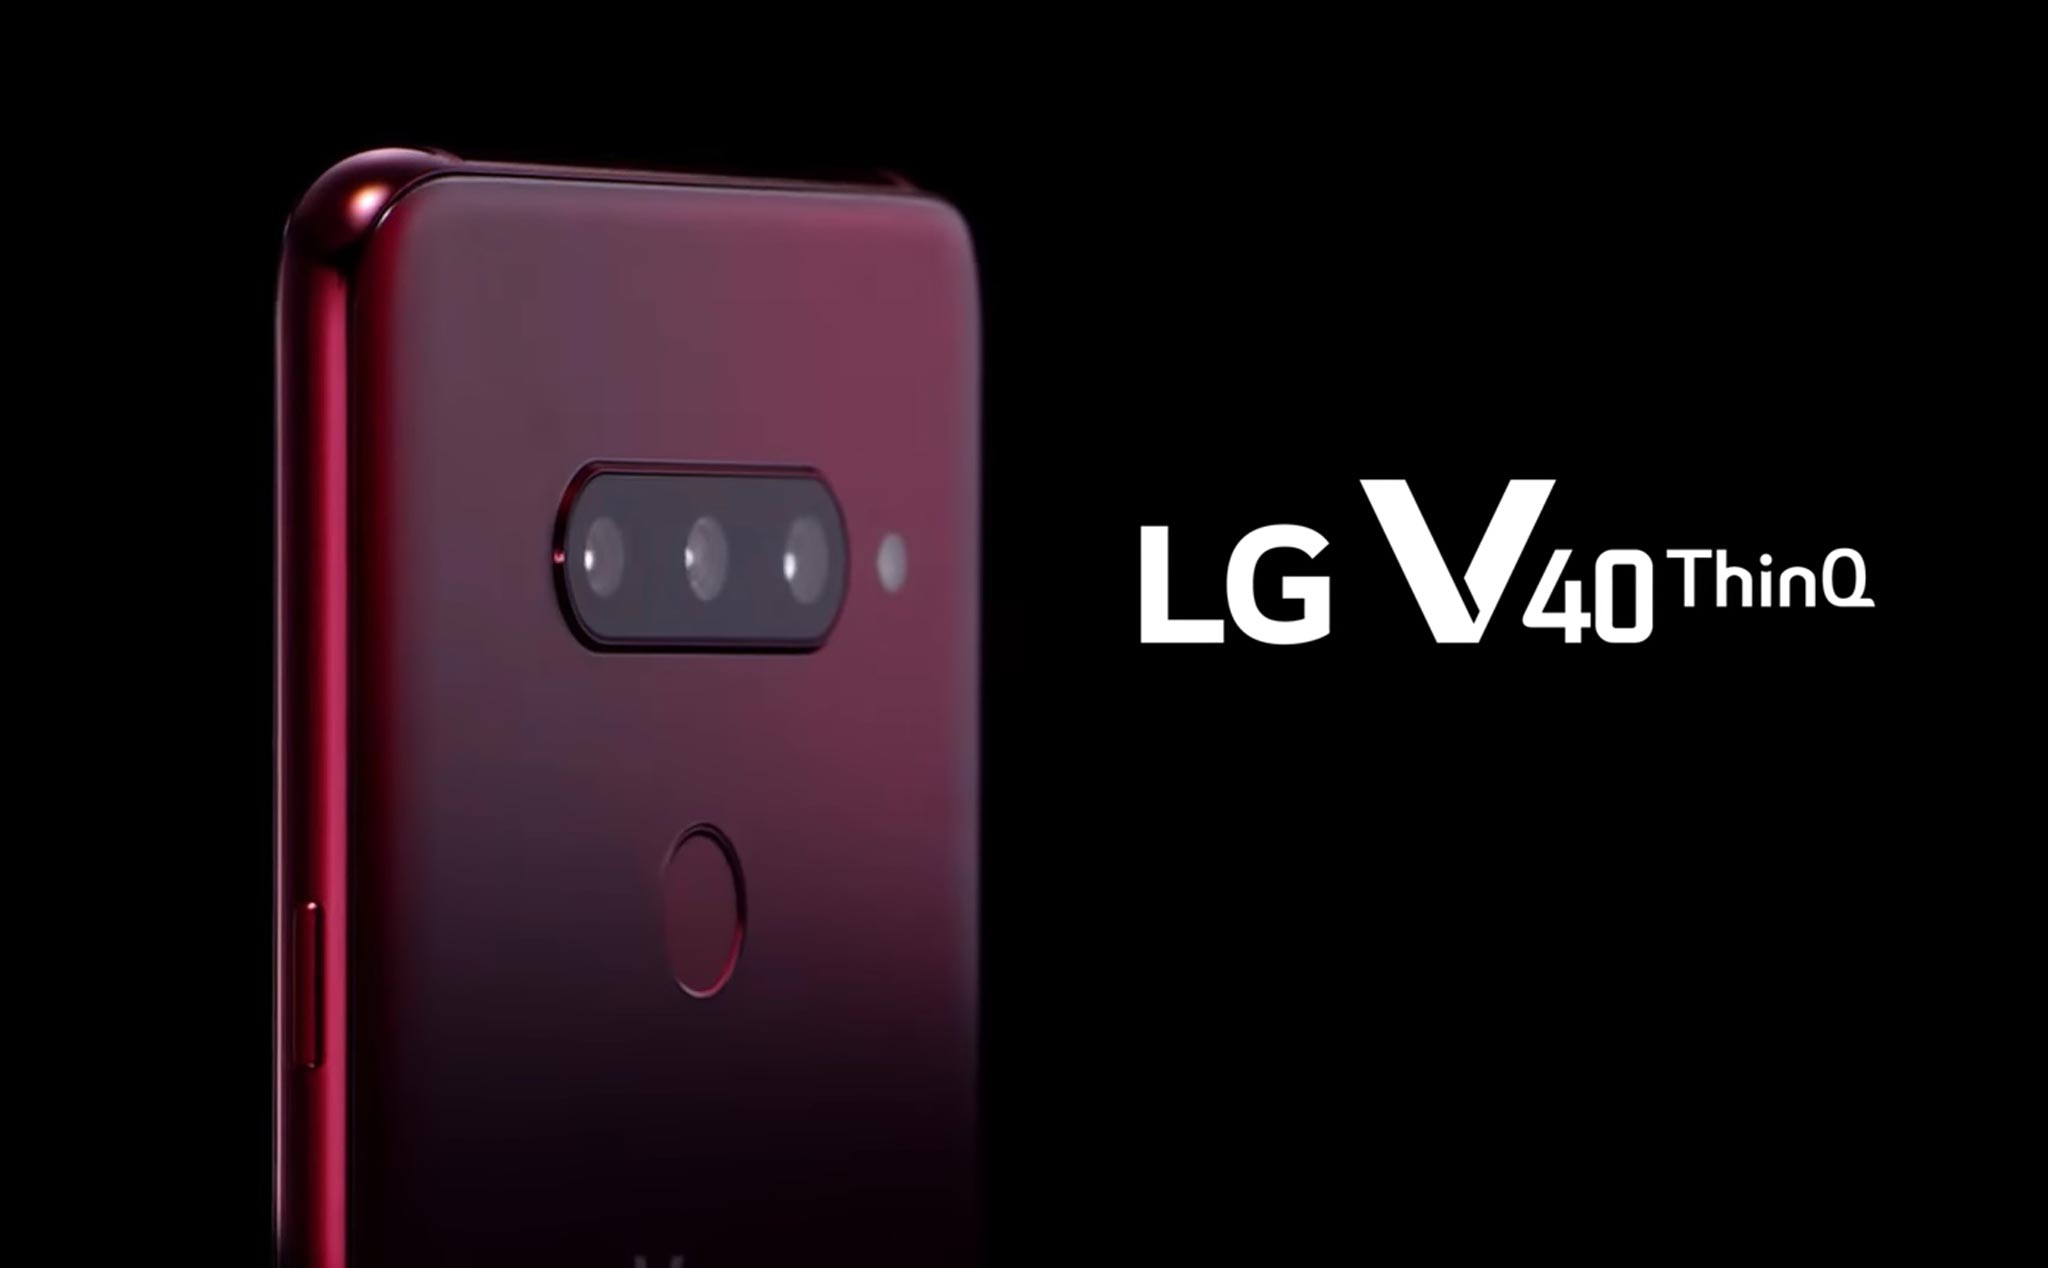 LG xác nhận V40 ThinQ sẽ có 5 camera, màn hình 6,4" viền mỏng, 4 màu sắc